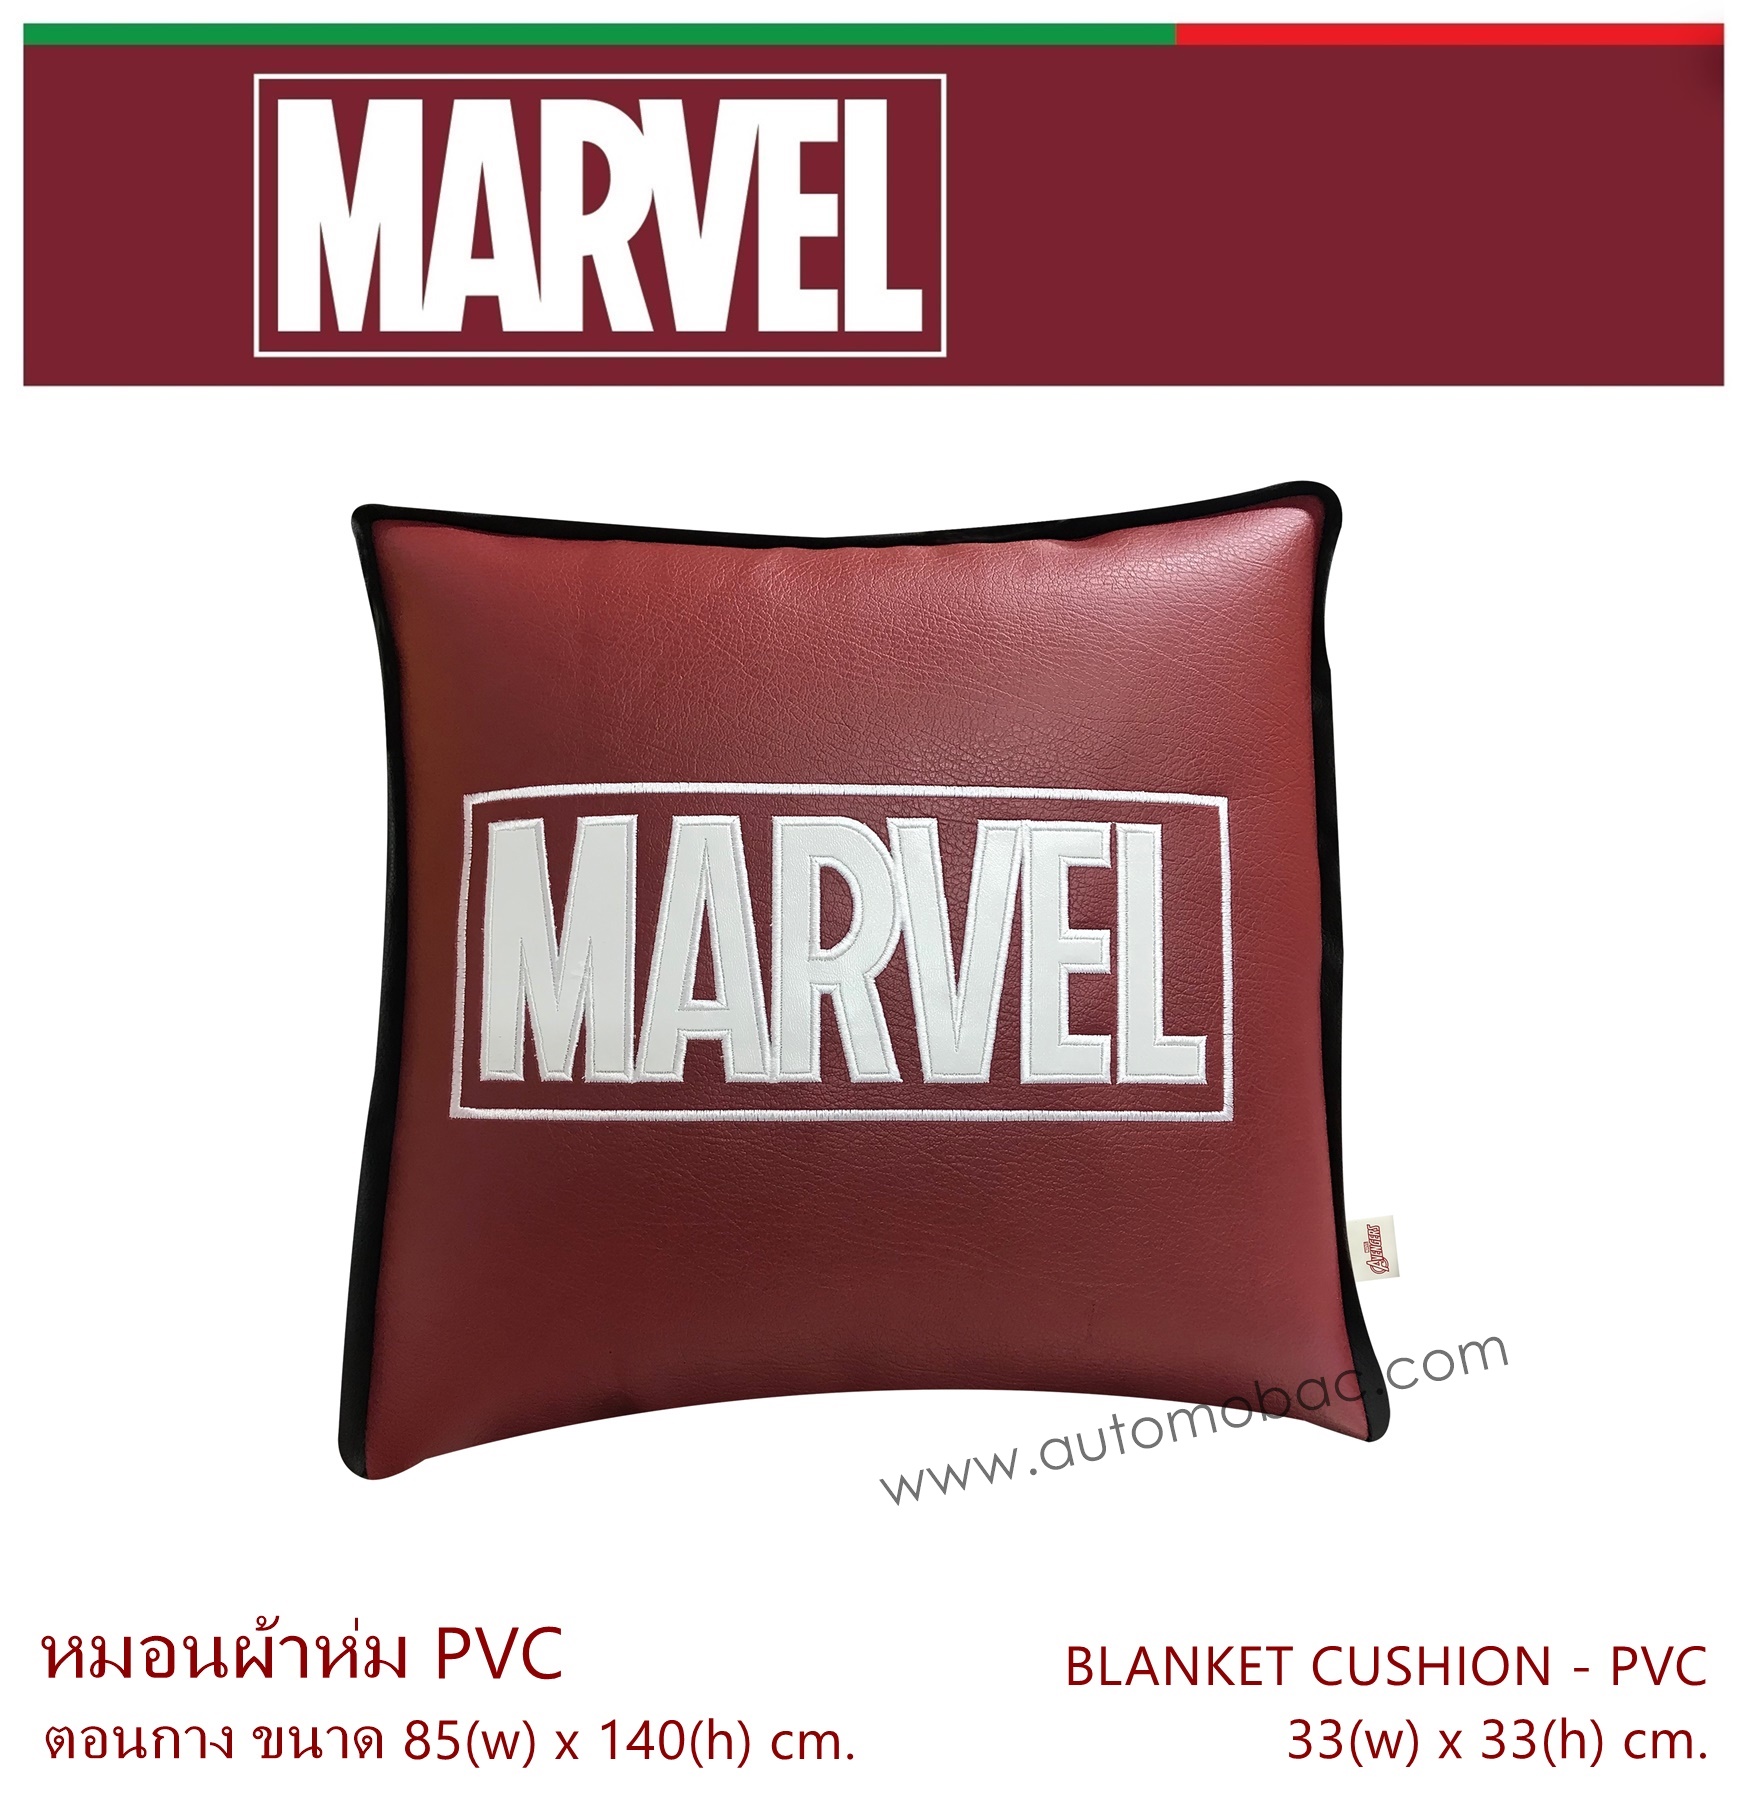 MARVEL หมอนผ้าห่ม 2 in 1 ผลิตจาก PVC เกรด A ขนาดประมาณ 85 x 140 cm. ใช้ได้ทั้งในรถ และในบ้าน